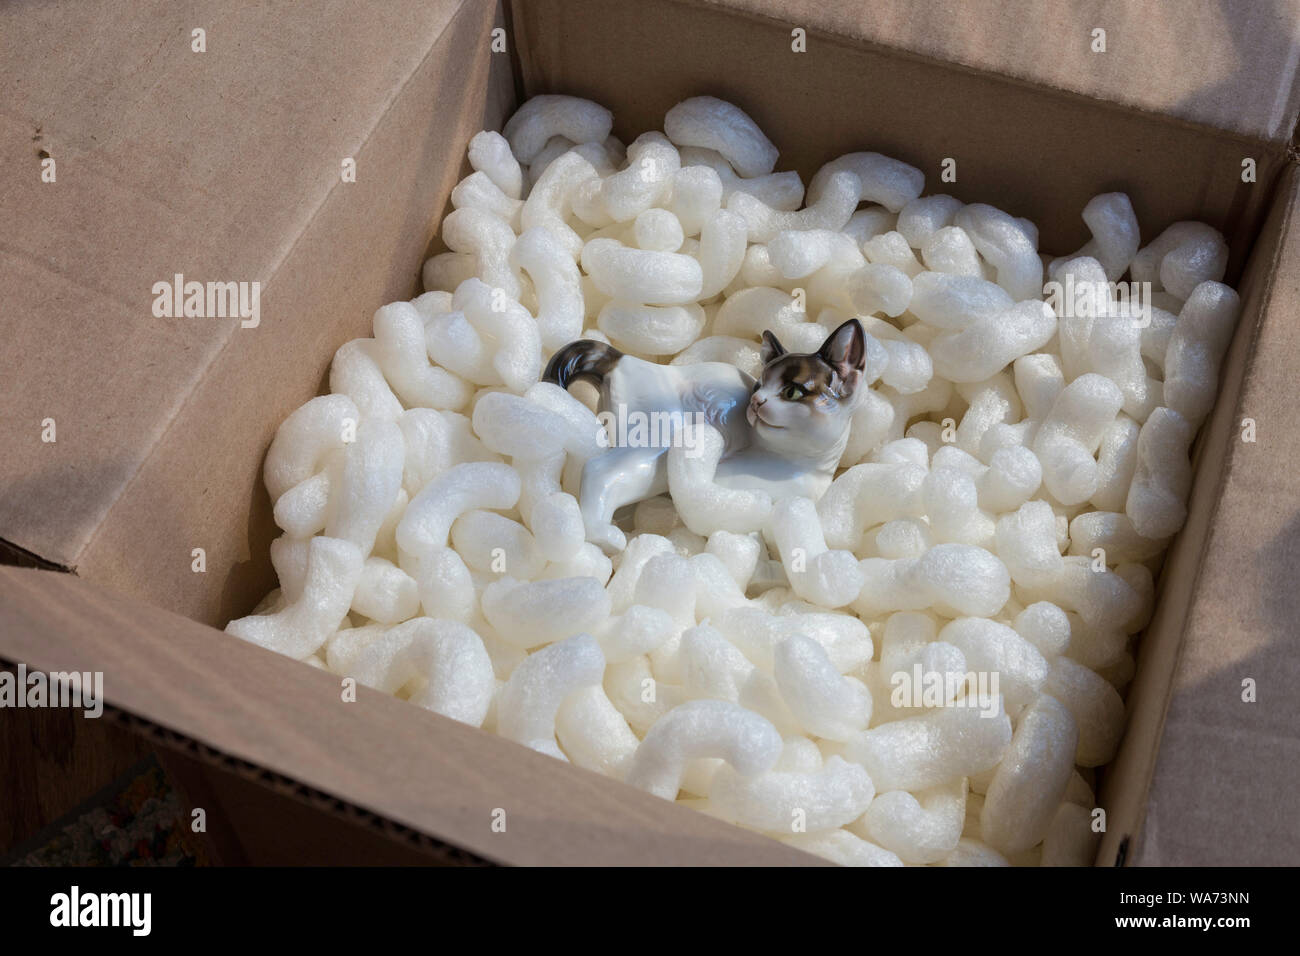 Figurine chaton porcelaine Rosenthal dans en toute sécurité avec boîte de polystyrène expansé Banque D'Images